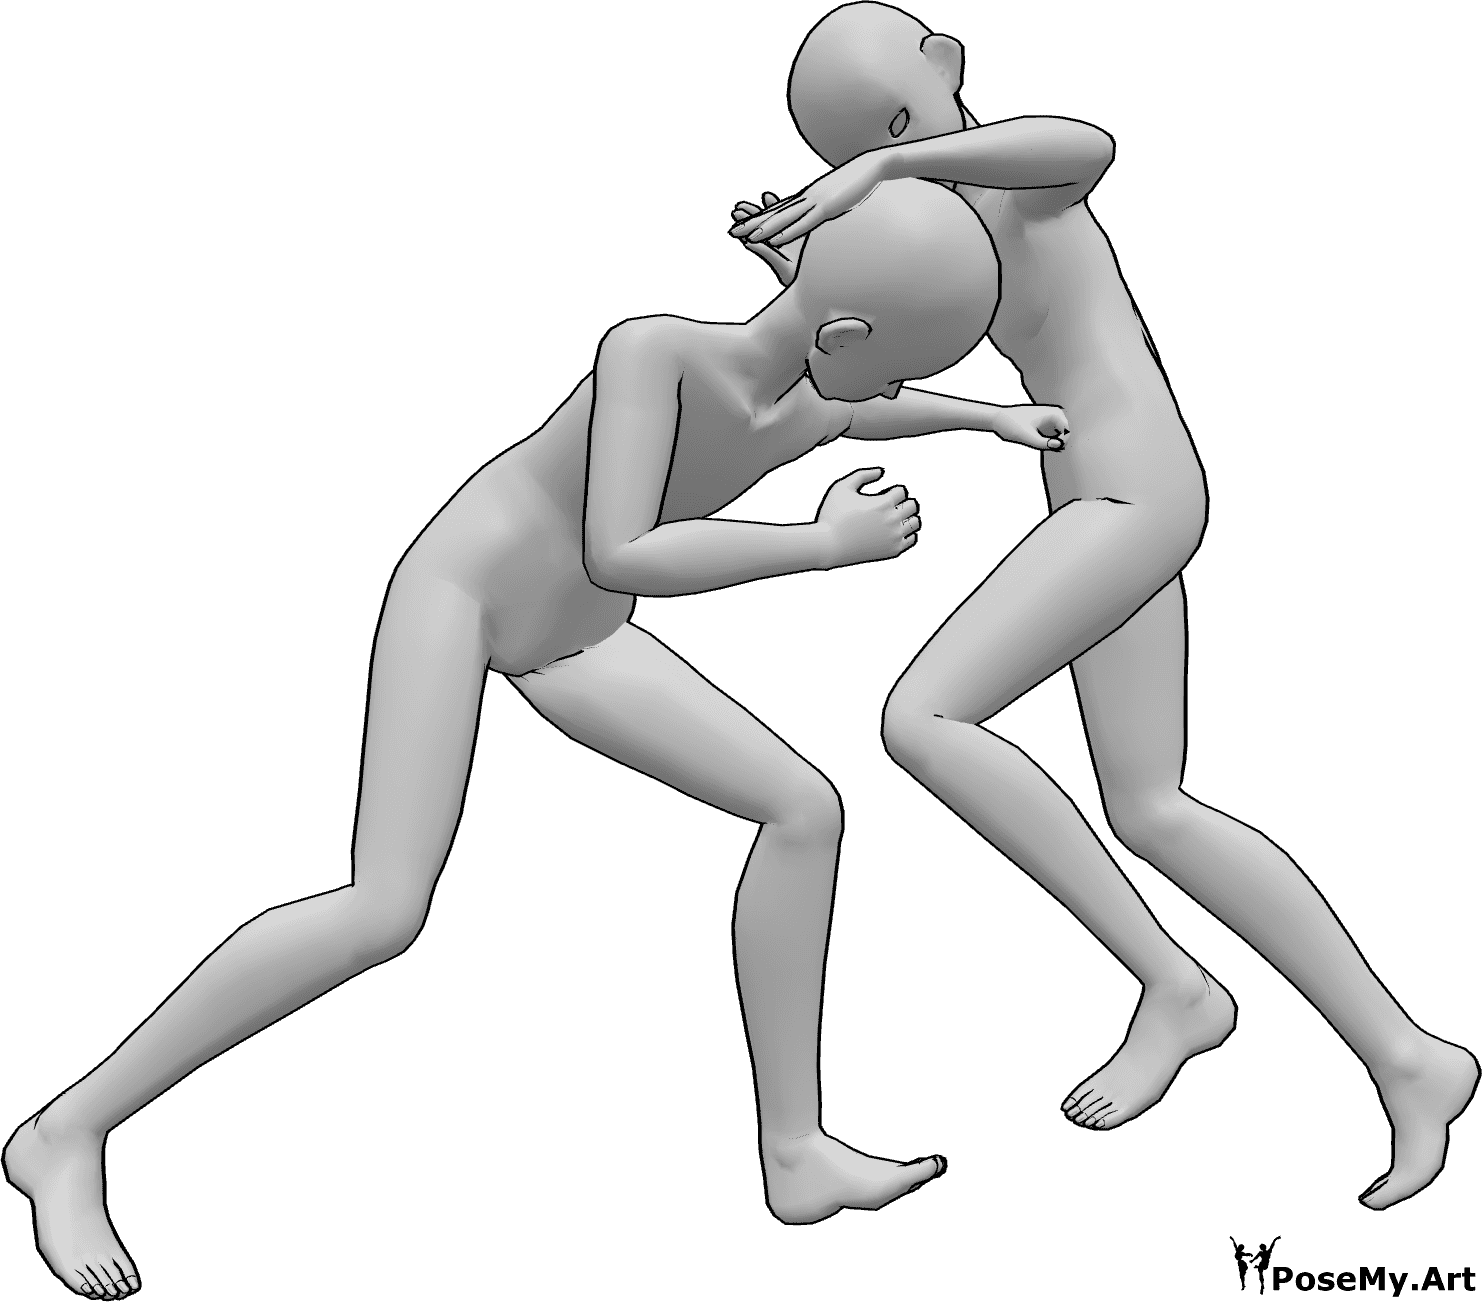 Posen-Referenz- Anime Kampfpose - Zwei Anime-Männer kämpfen, einer schlägt dem anderen in den Magen, der andere tritt ihm mit dem Knie gegen den Kopf